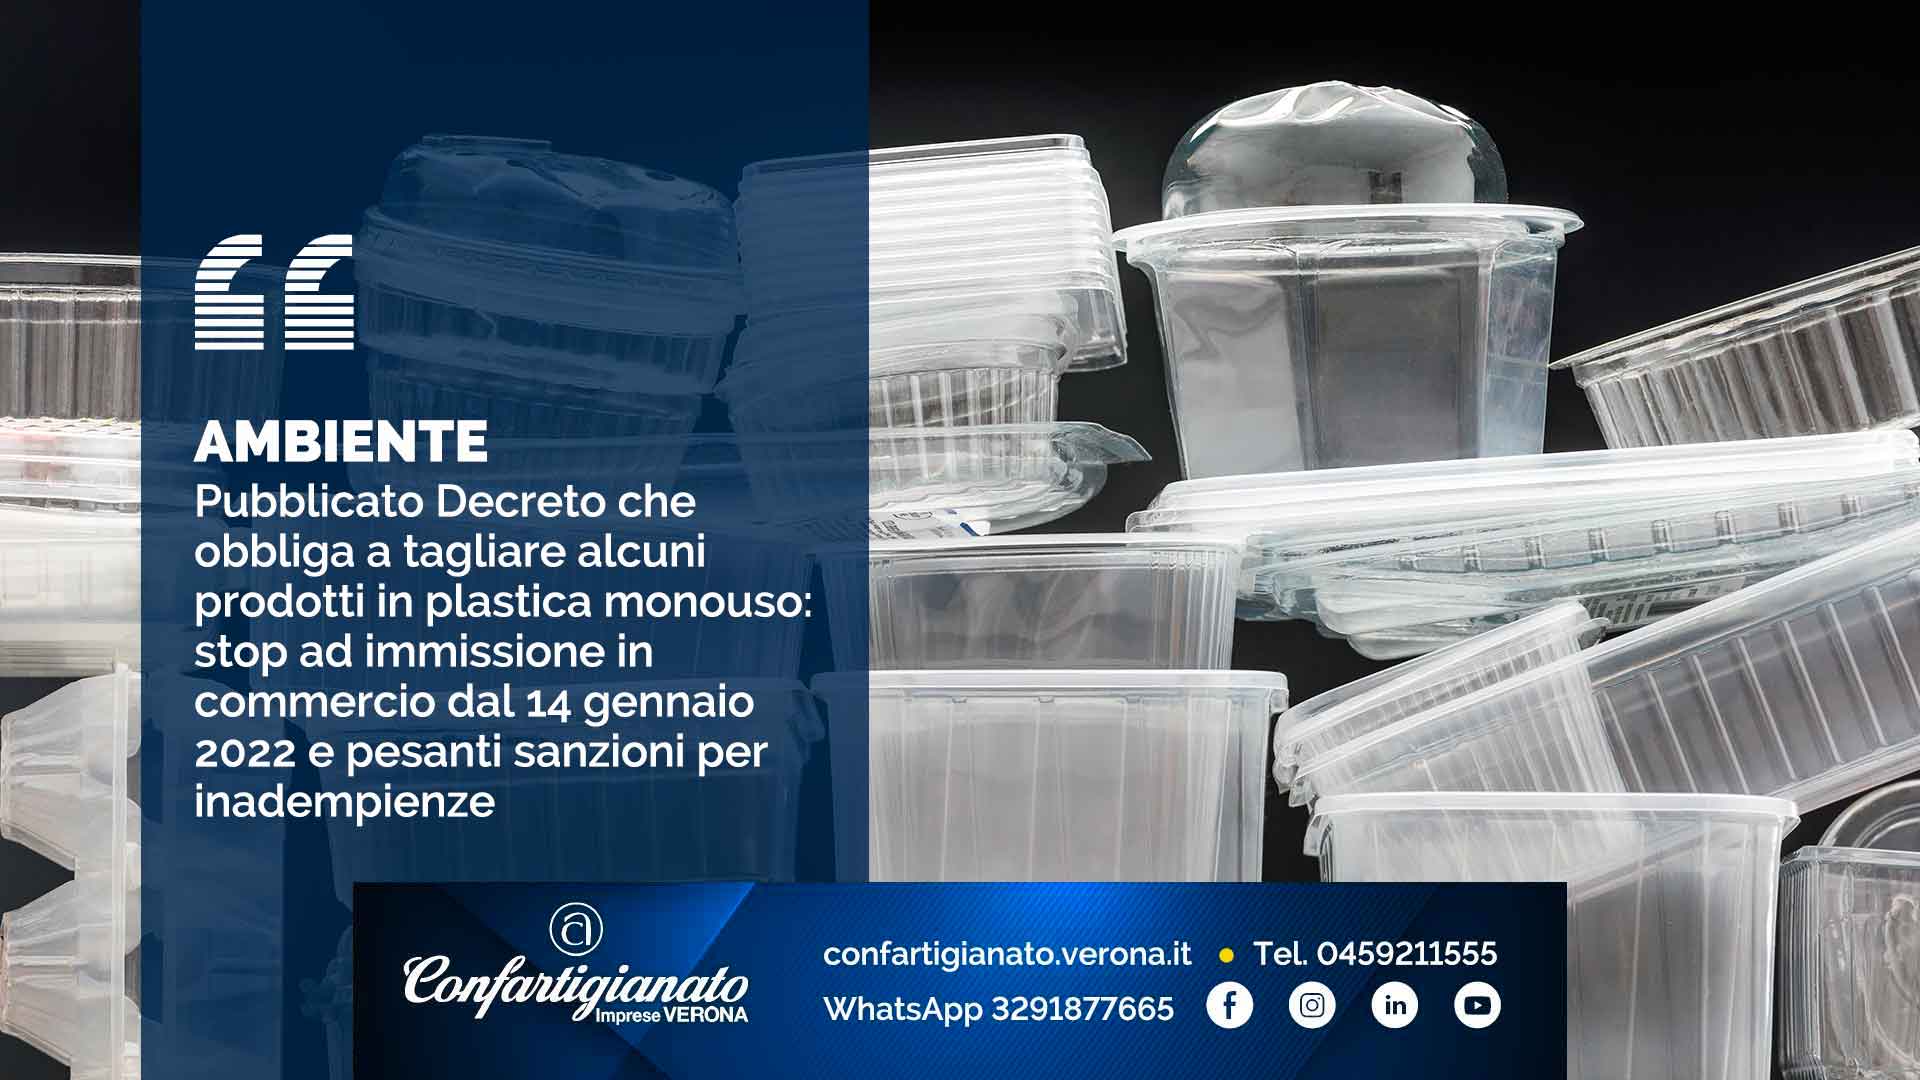 AMBIENTE – Pubblicato Decreto che obbliga a tagliare alcuni prodotti in plastica monouso: stop ad immissione in commercio dal 14 gennaio 2022 e pesanti sanzioni per inadempienze